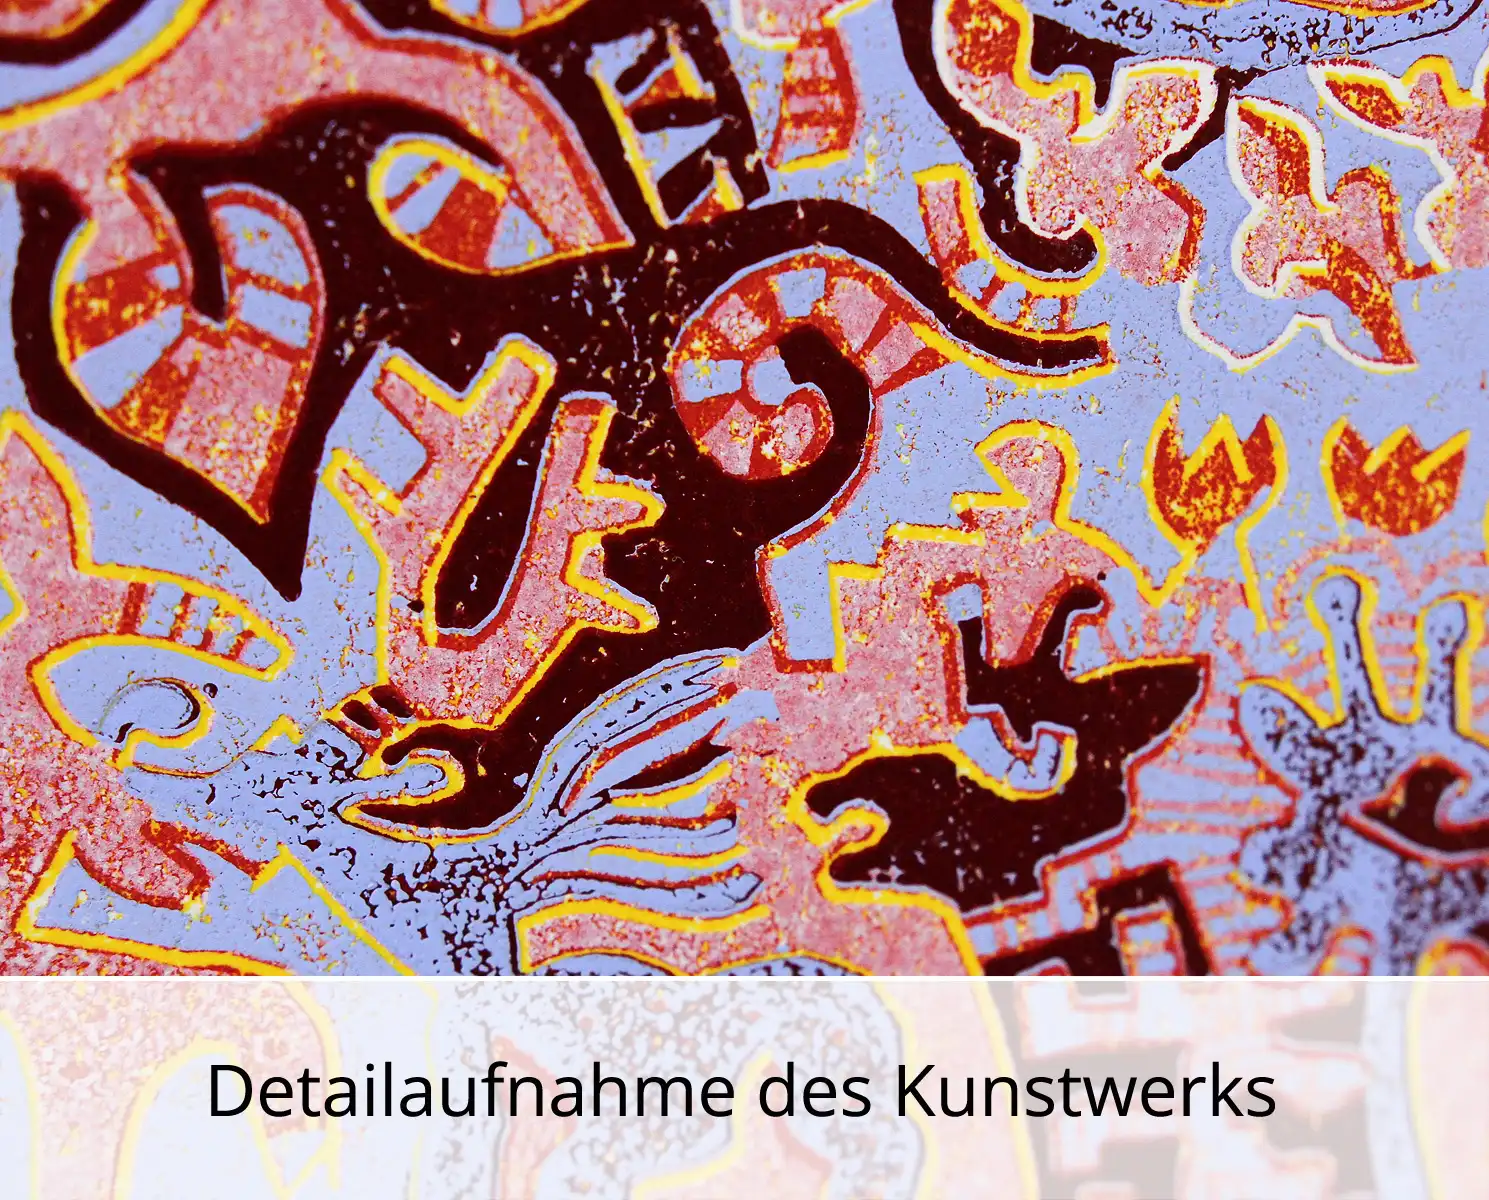 F.O. Haake: "Der erste Adam benennt das Einhorn", originale Grafik/serielles Unikat, mehrfarbiger Linoldruck